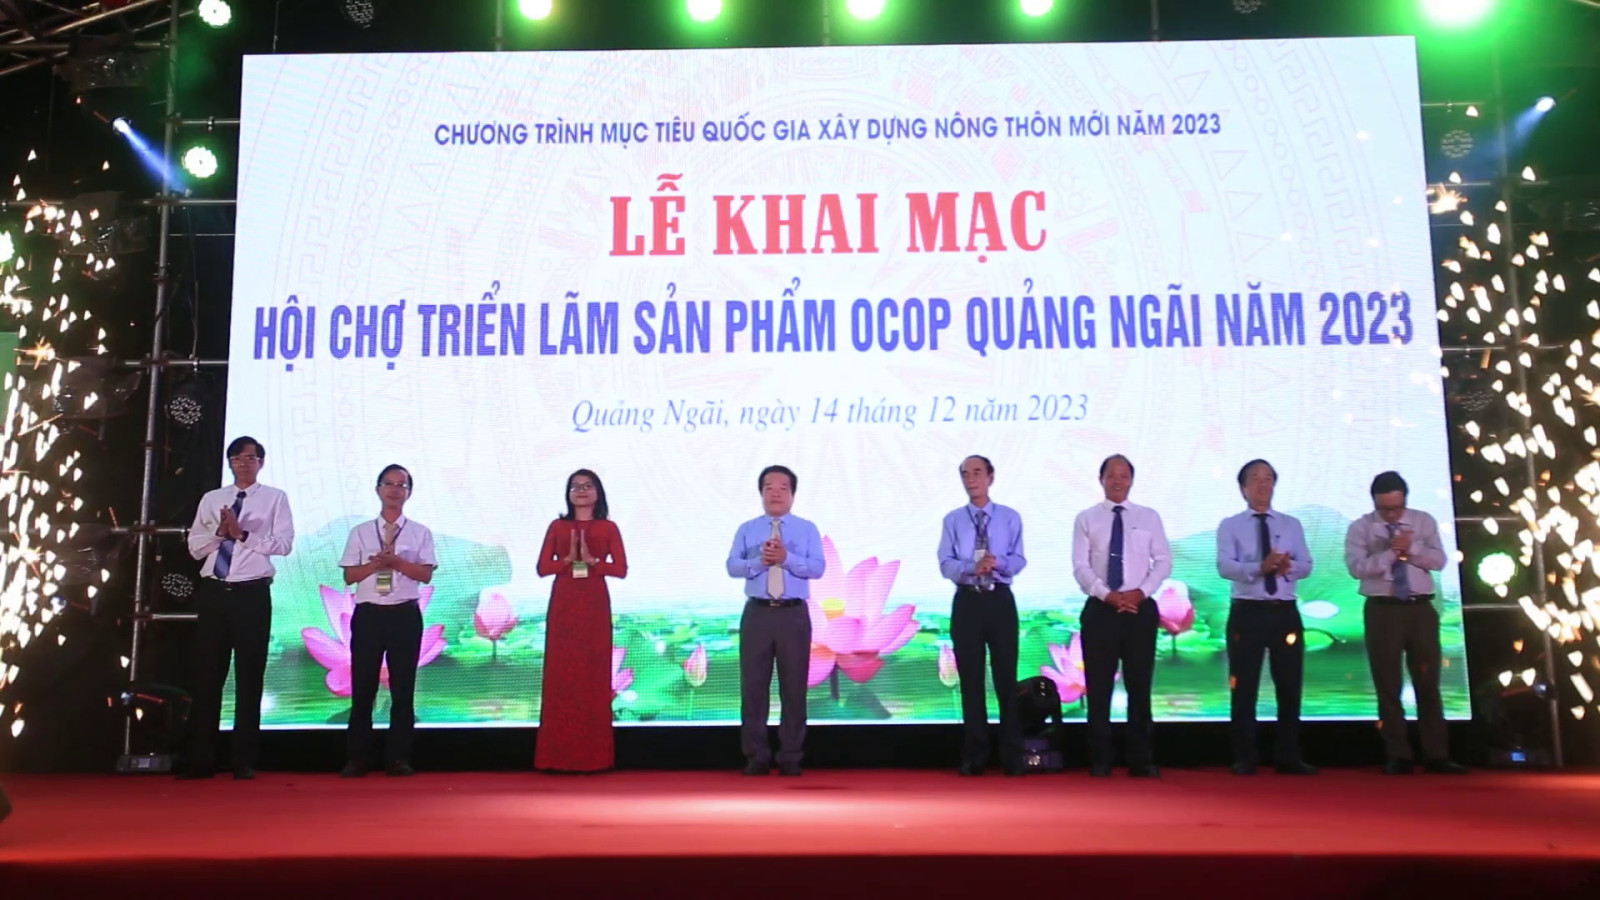 Hơn 30 sản phẩm tiêu biểu tỉnh Hà Tĩnh tham gia trưng bày, giới thiệu, quảng bá tại Hội chợ Triển lãm sản phẩm OCOP Quảng Ngãi năm 2023